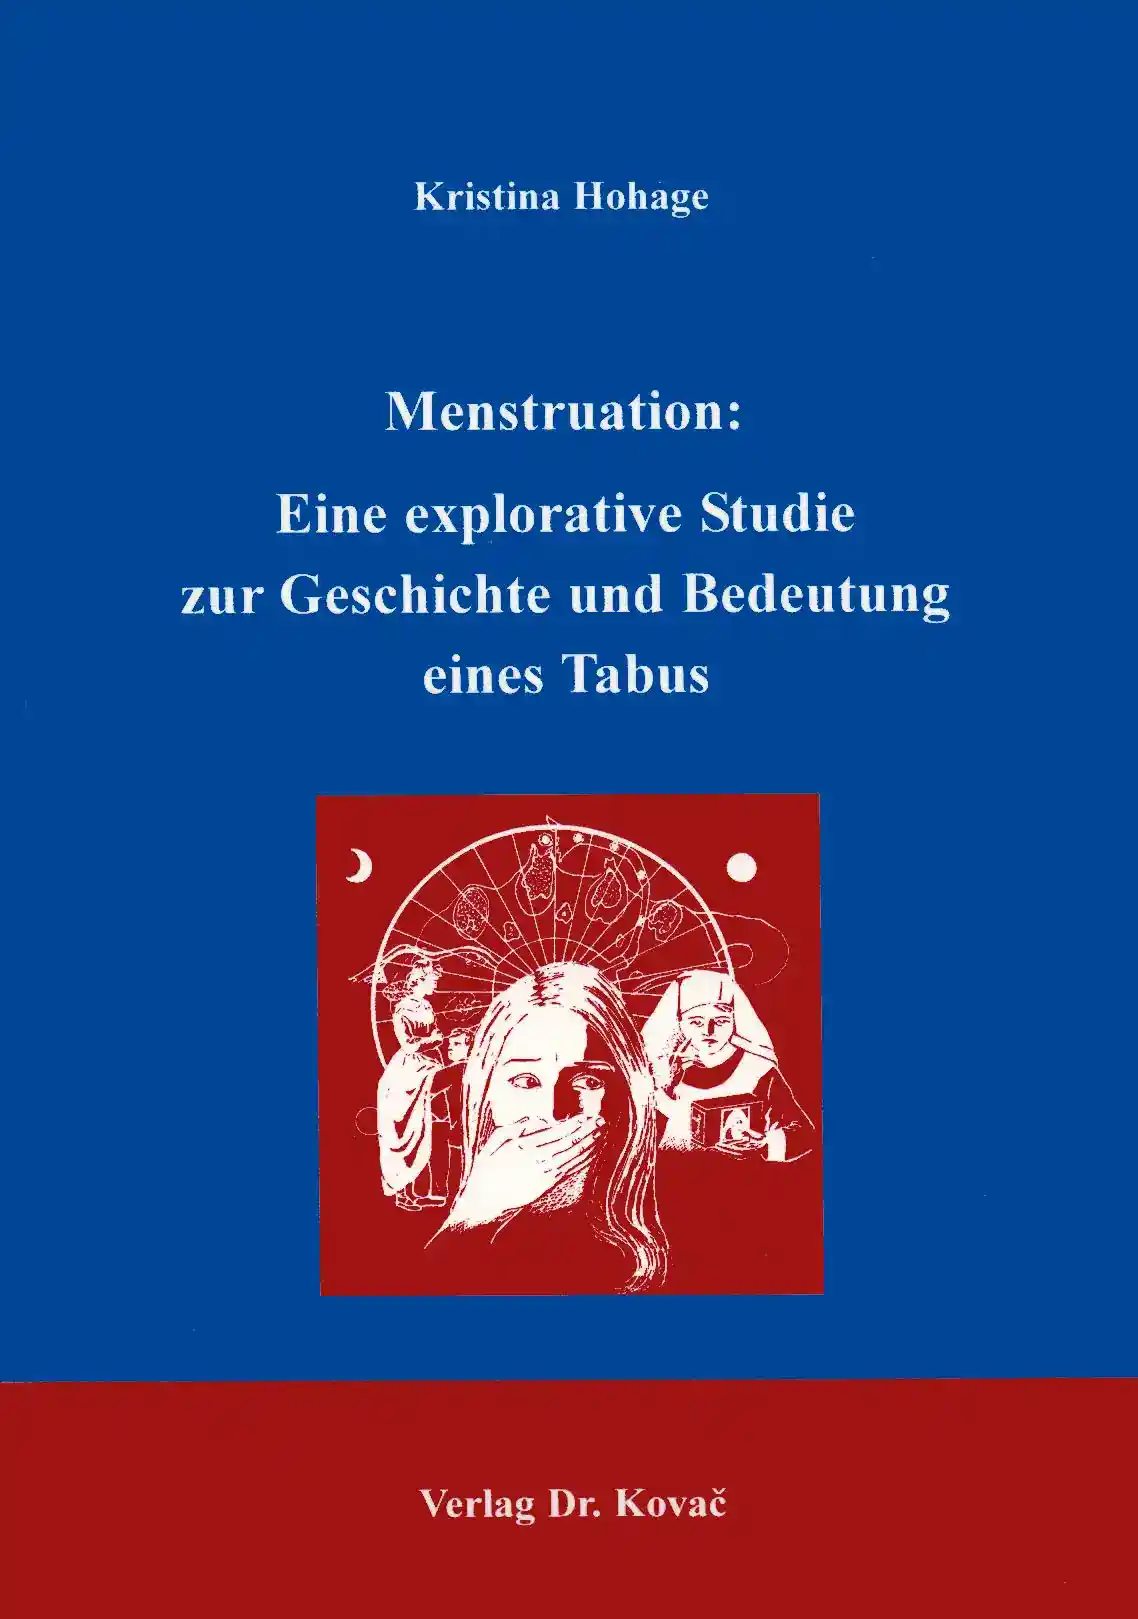 Dissertation: Menstruation: Eine explorative Studie zur Geschichte und Bedeutung eines Tabus